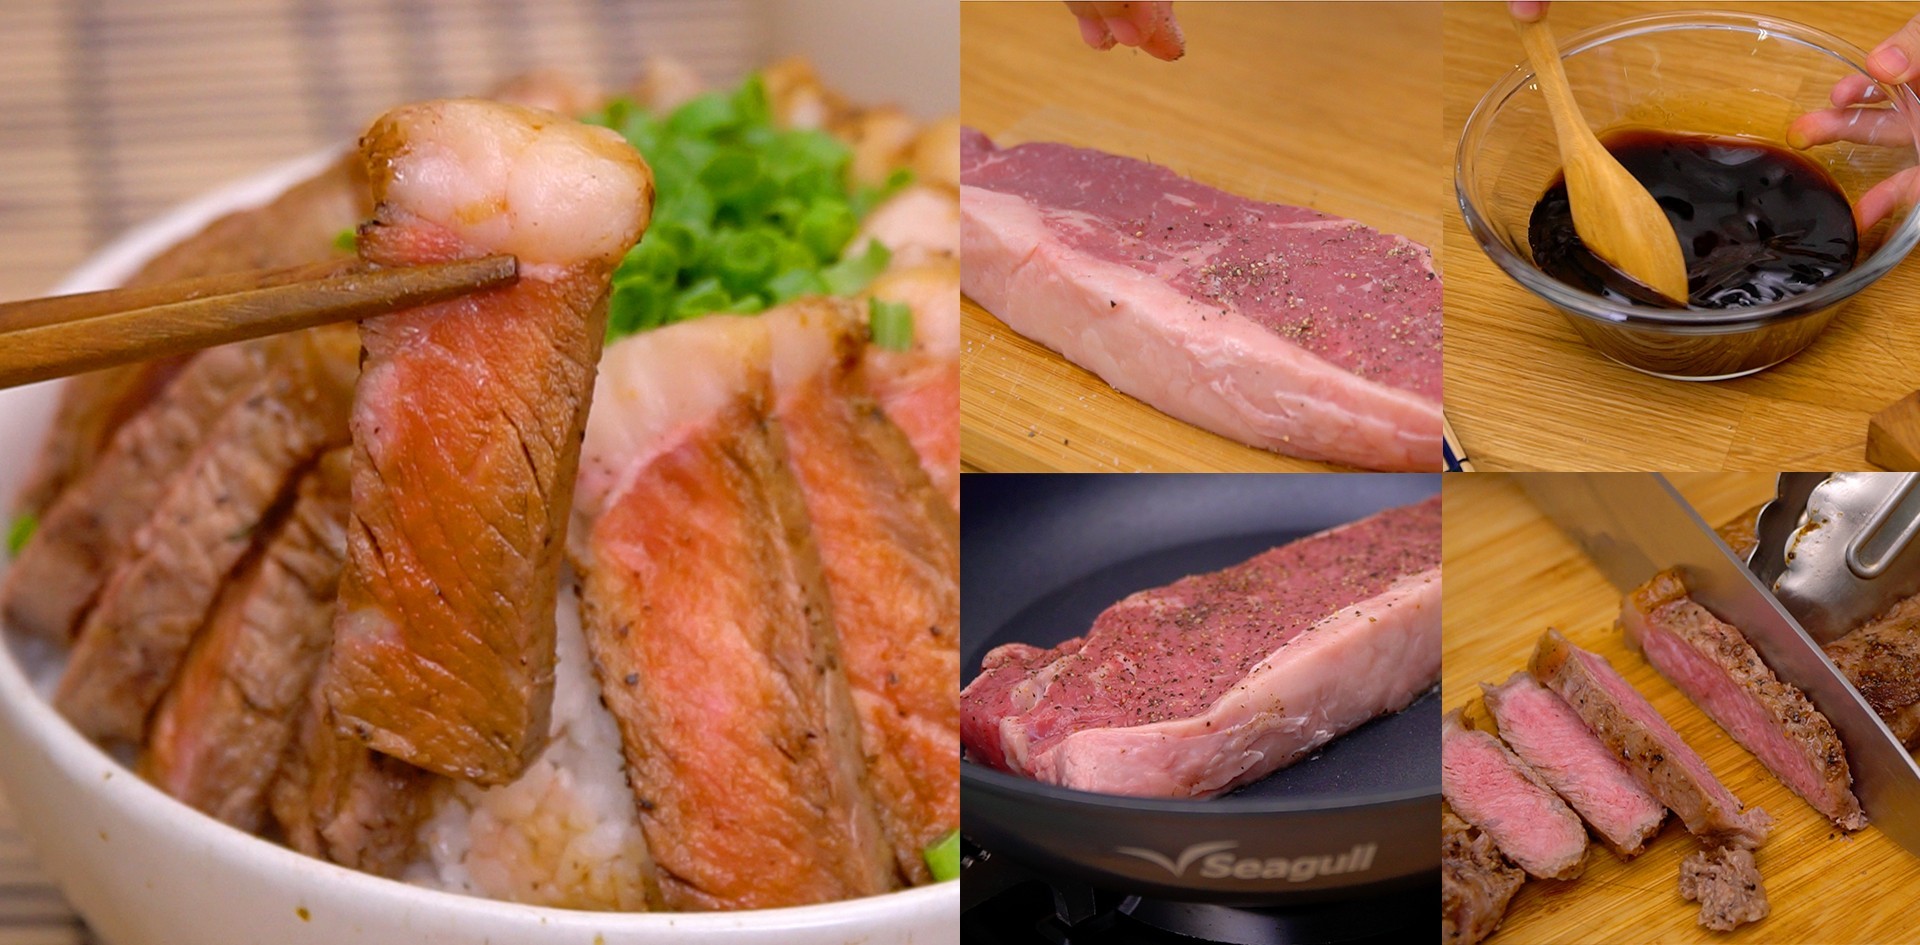 วิธีทำ “ข้าวหน้าสเต๊กเนื้อ” เมนูอาหารญี่ปุ่น ทำง่ายเอาใจสายเนื้อ!